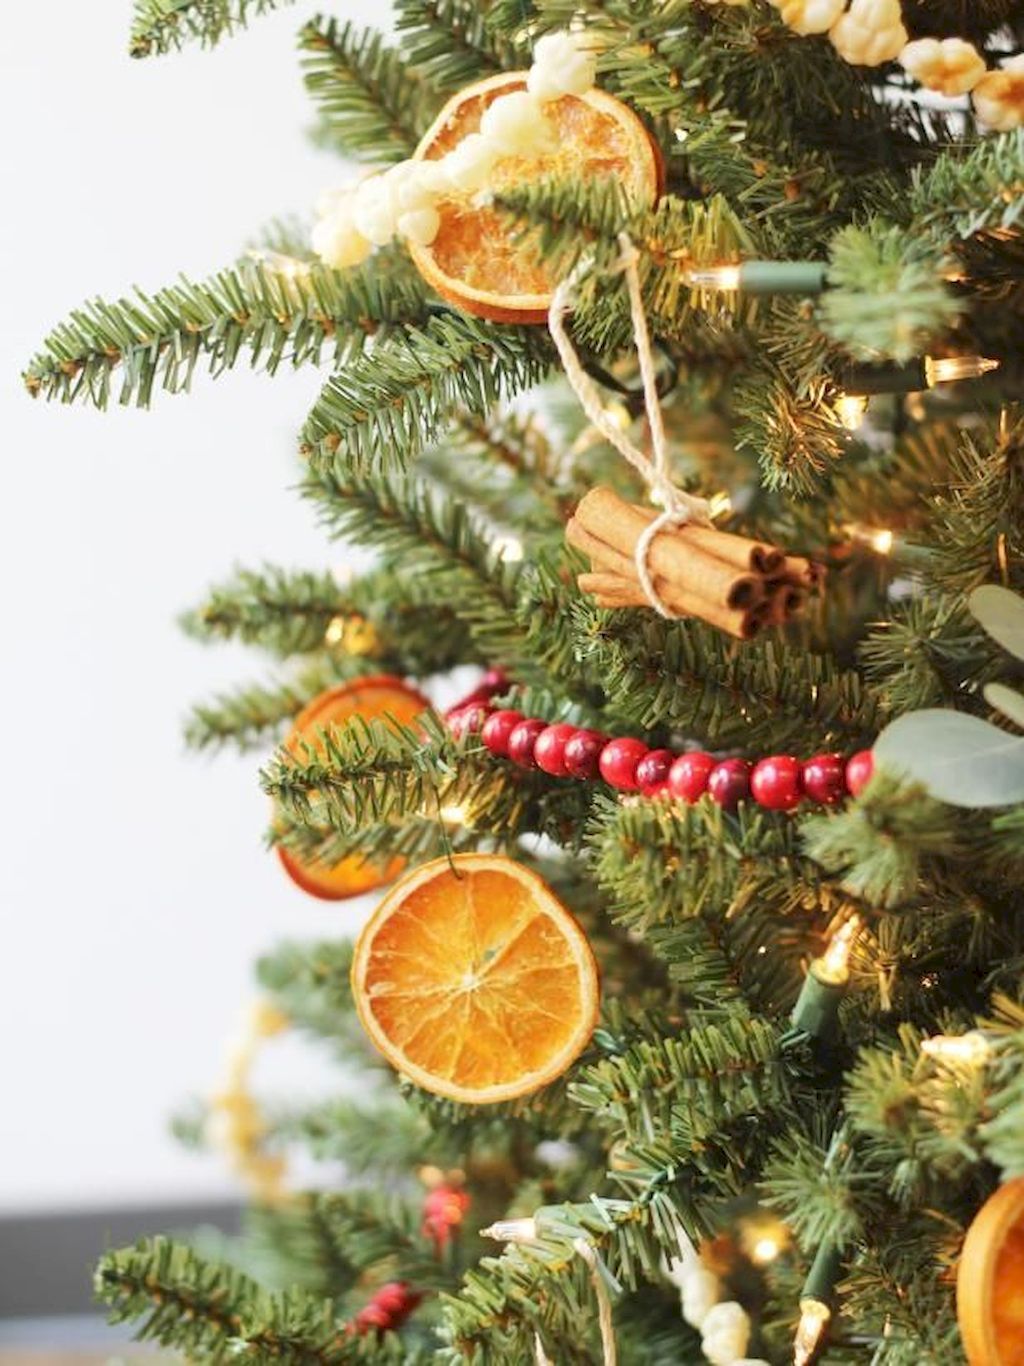 экологические советы на Рождество и новый год, натуральные украшения своими руками, дольки апельсина на елку, веточки корицы на елку